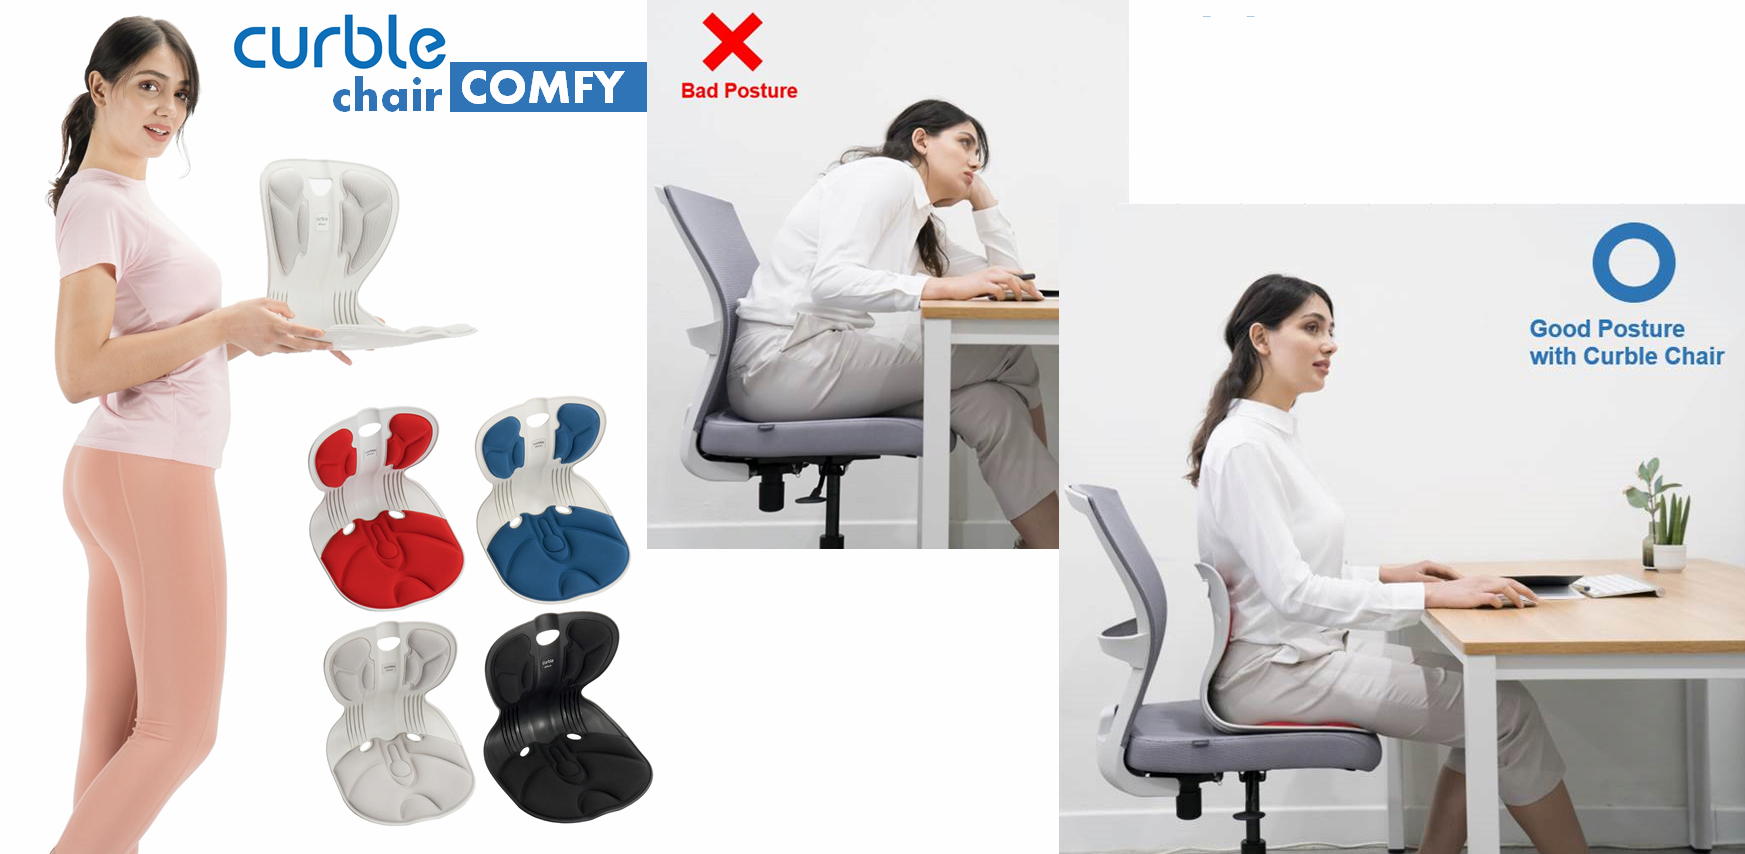 ablue Curble Chair Comfy / Posture Corrector / Curble Chair